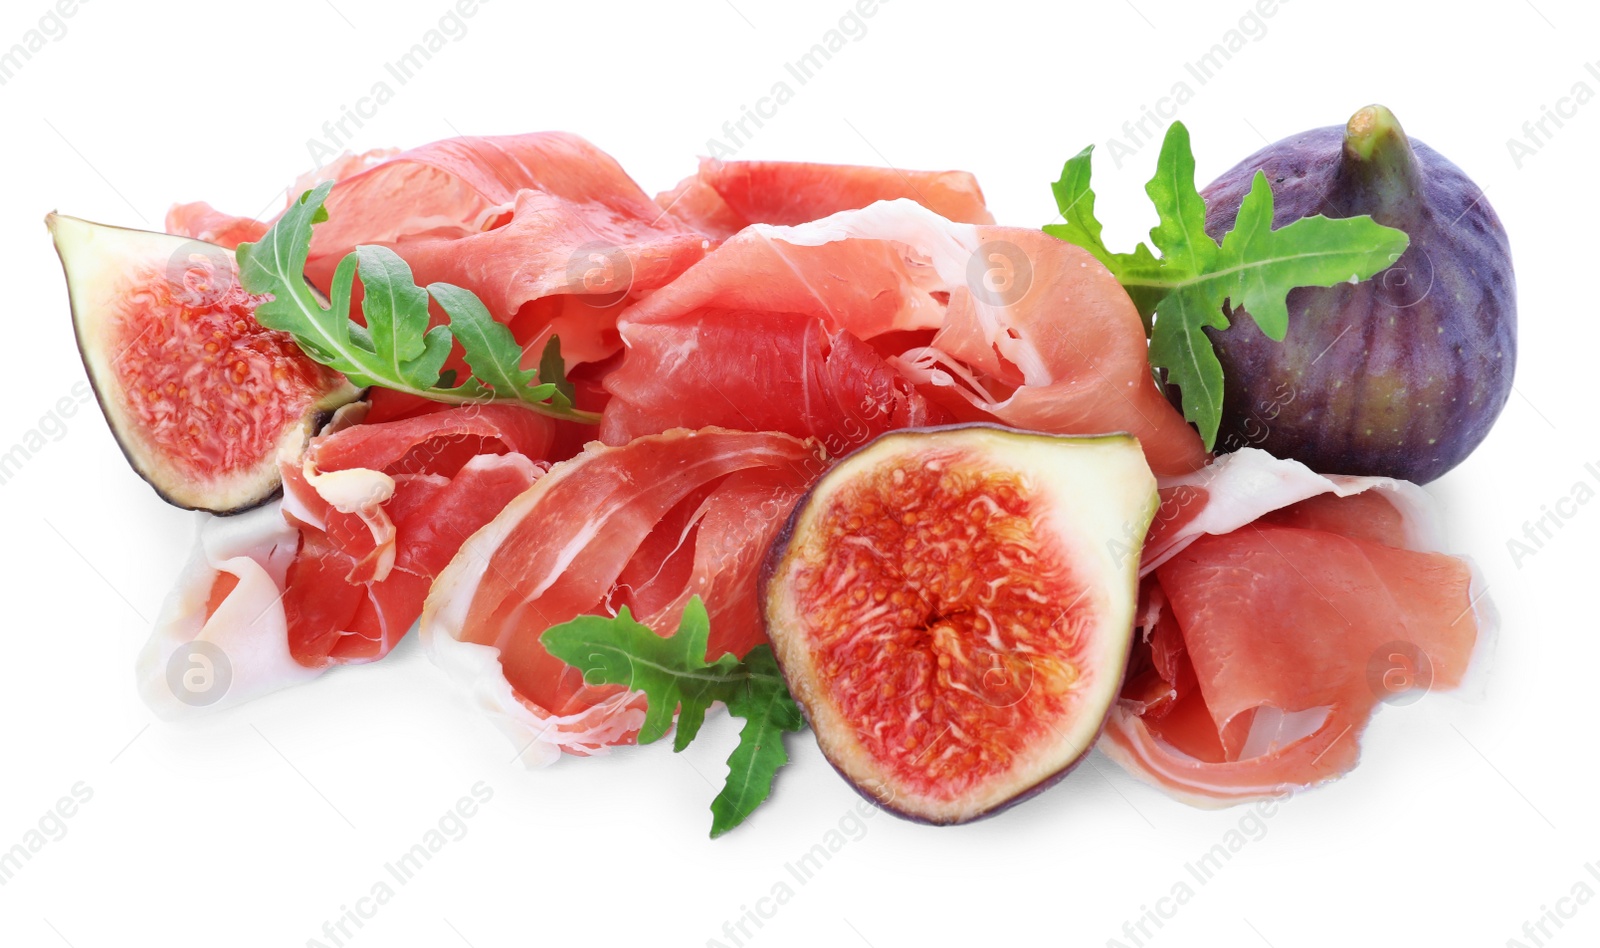 Photo of Delicious ripe figs, prosciutto and arugula on white background